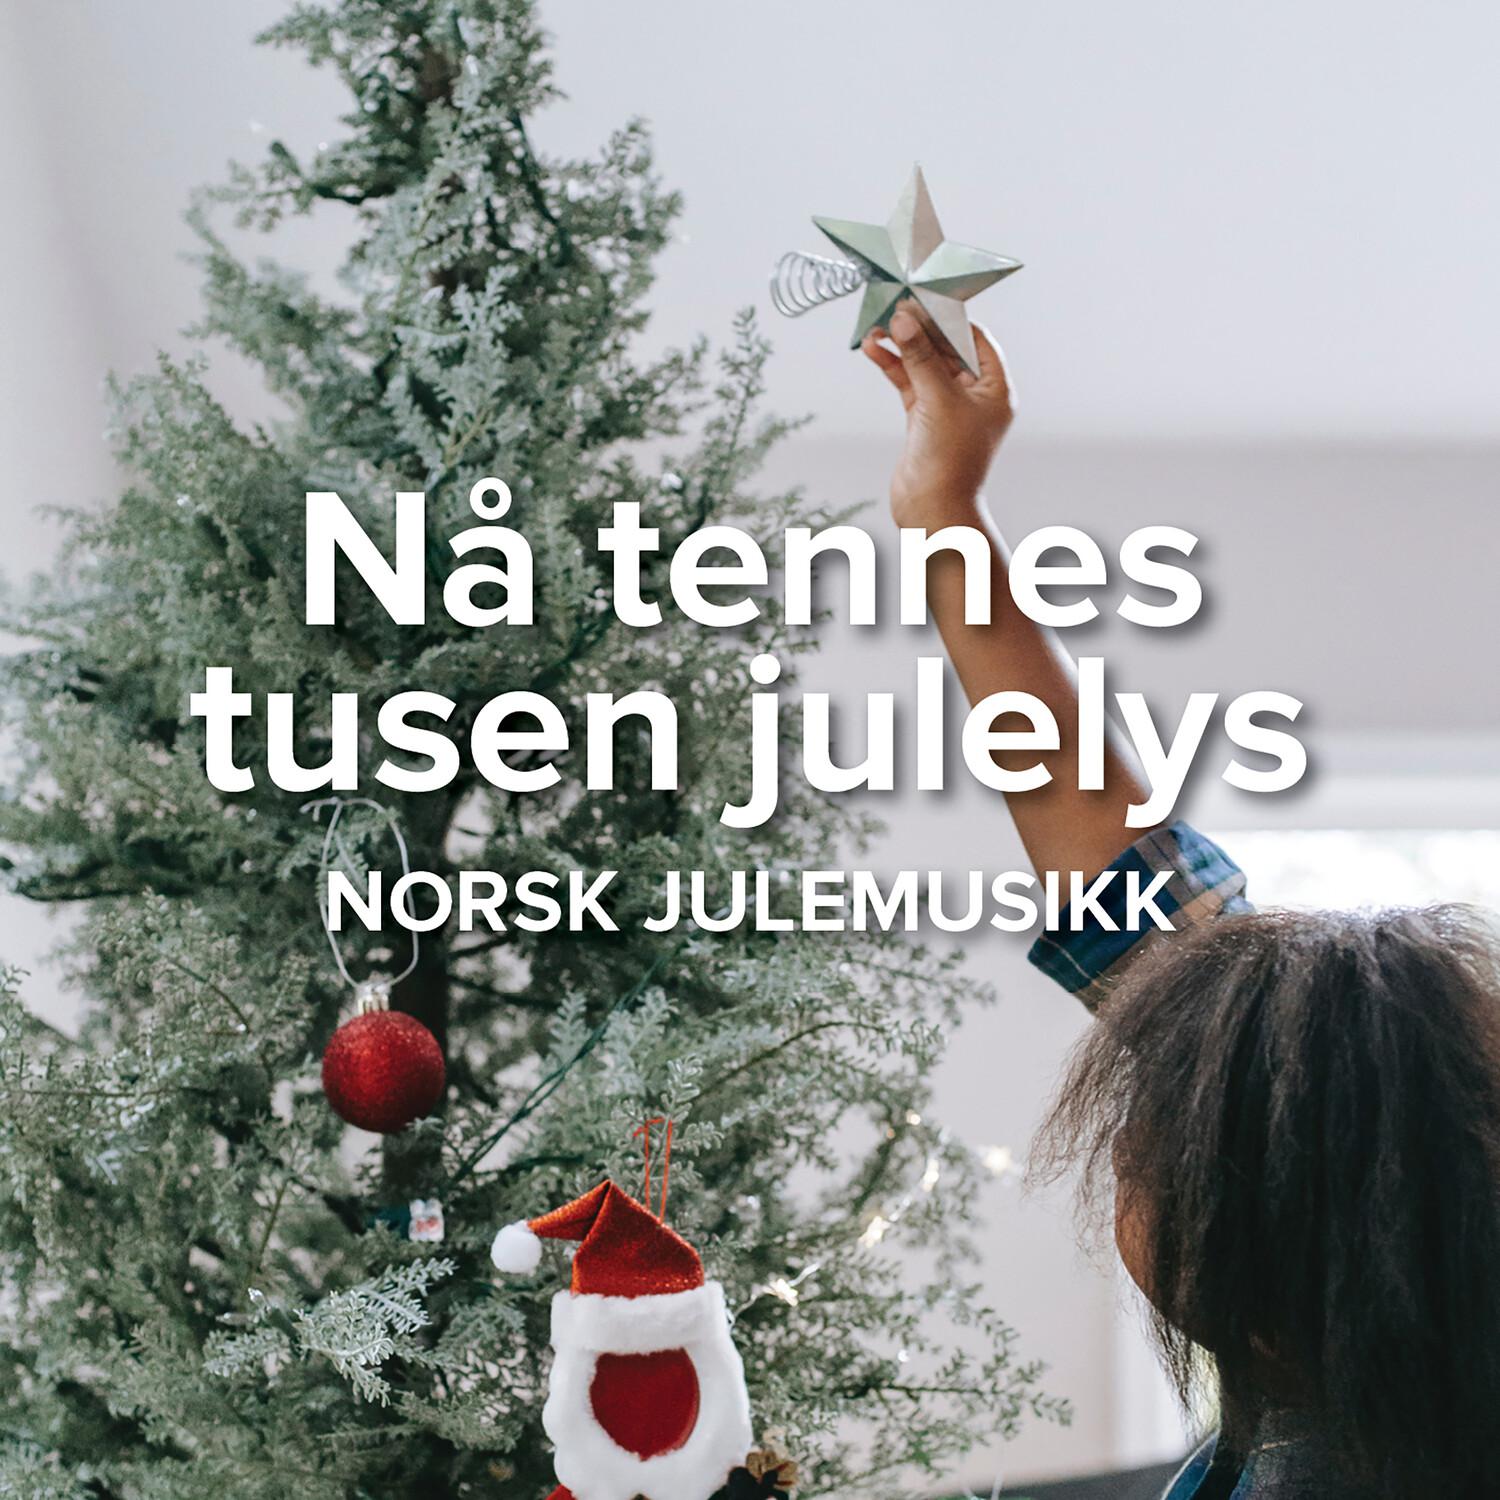 Nå tennes tusen julelys - Norsk julemusikk